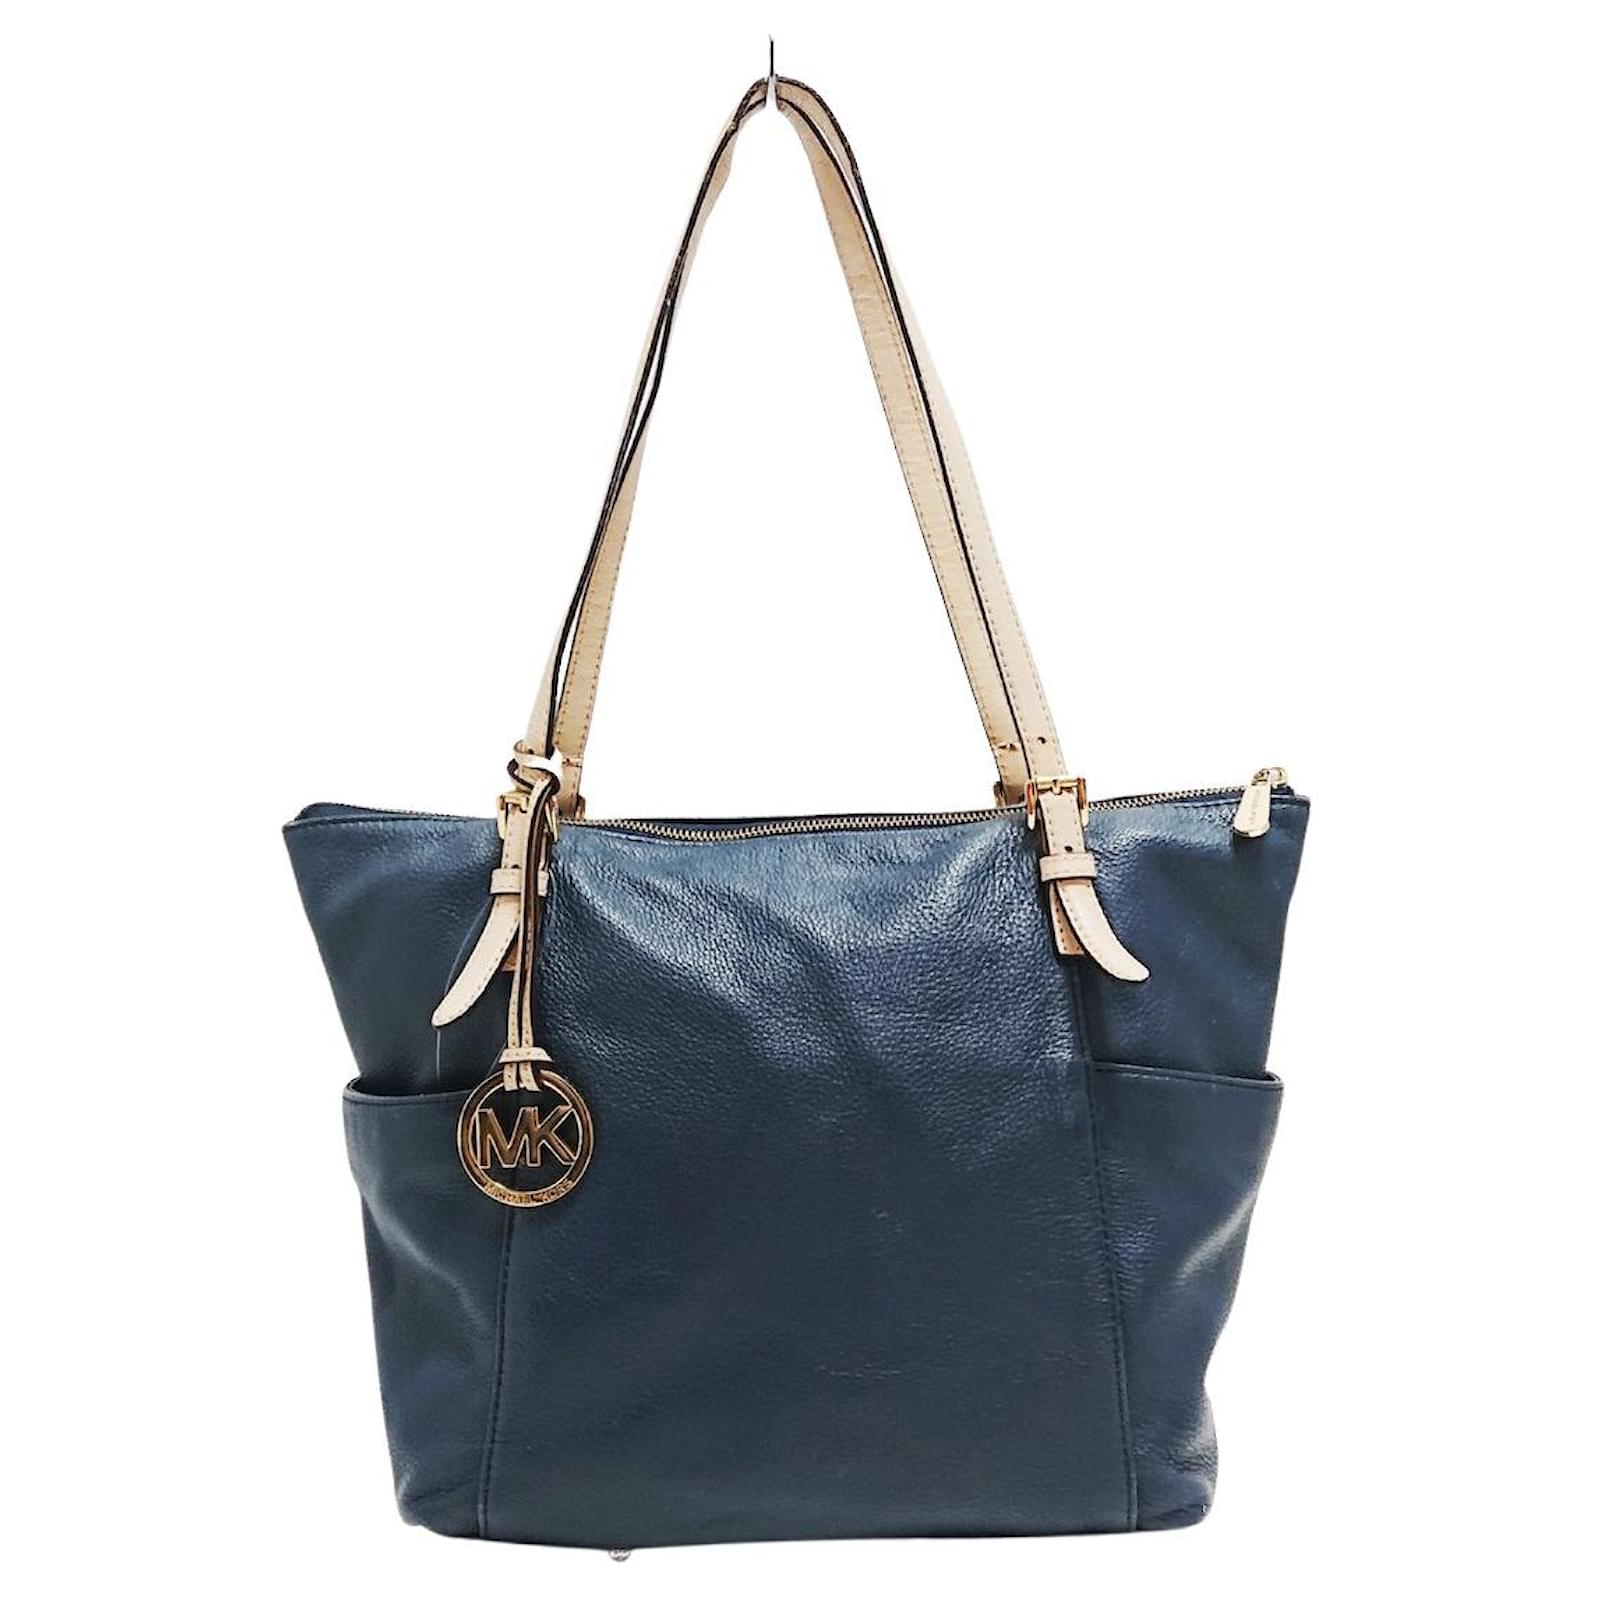 Michael Kors Shw Shoulder Bag Handbag 2 Way Calfskin Leather Navy